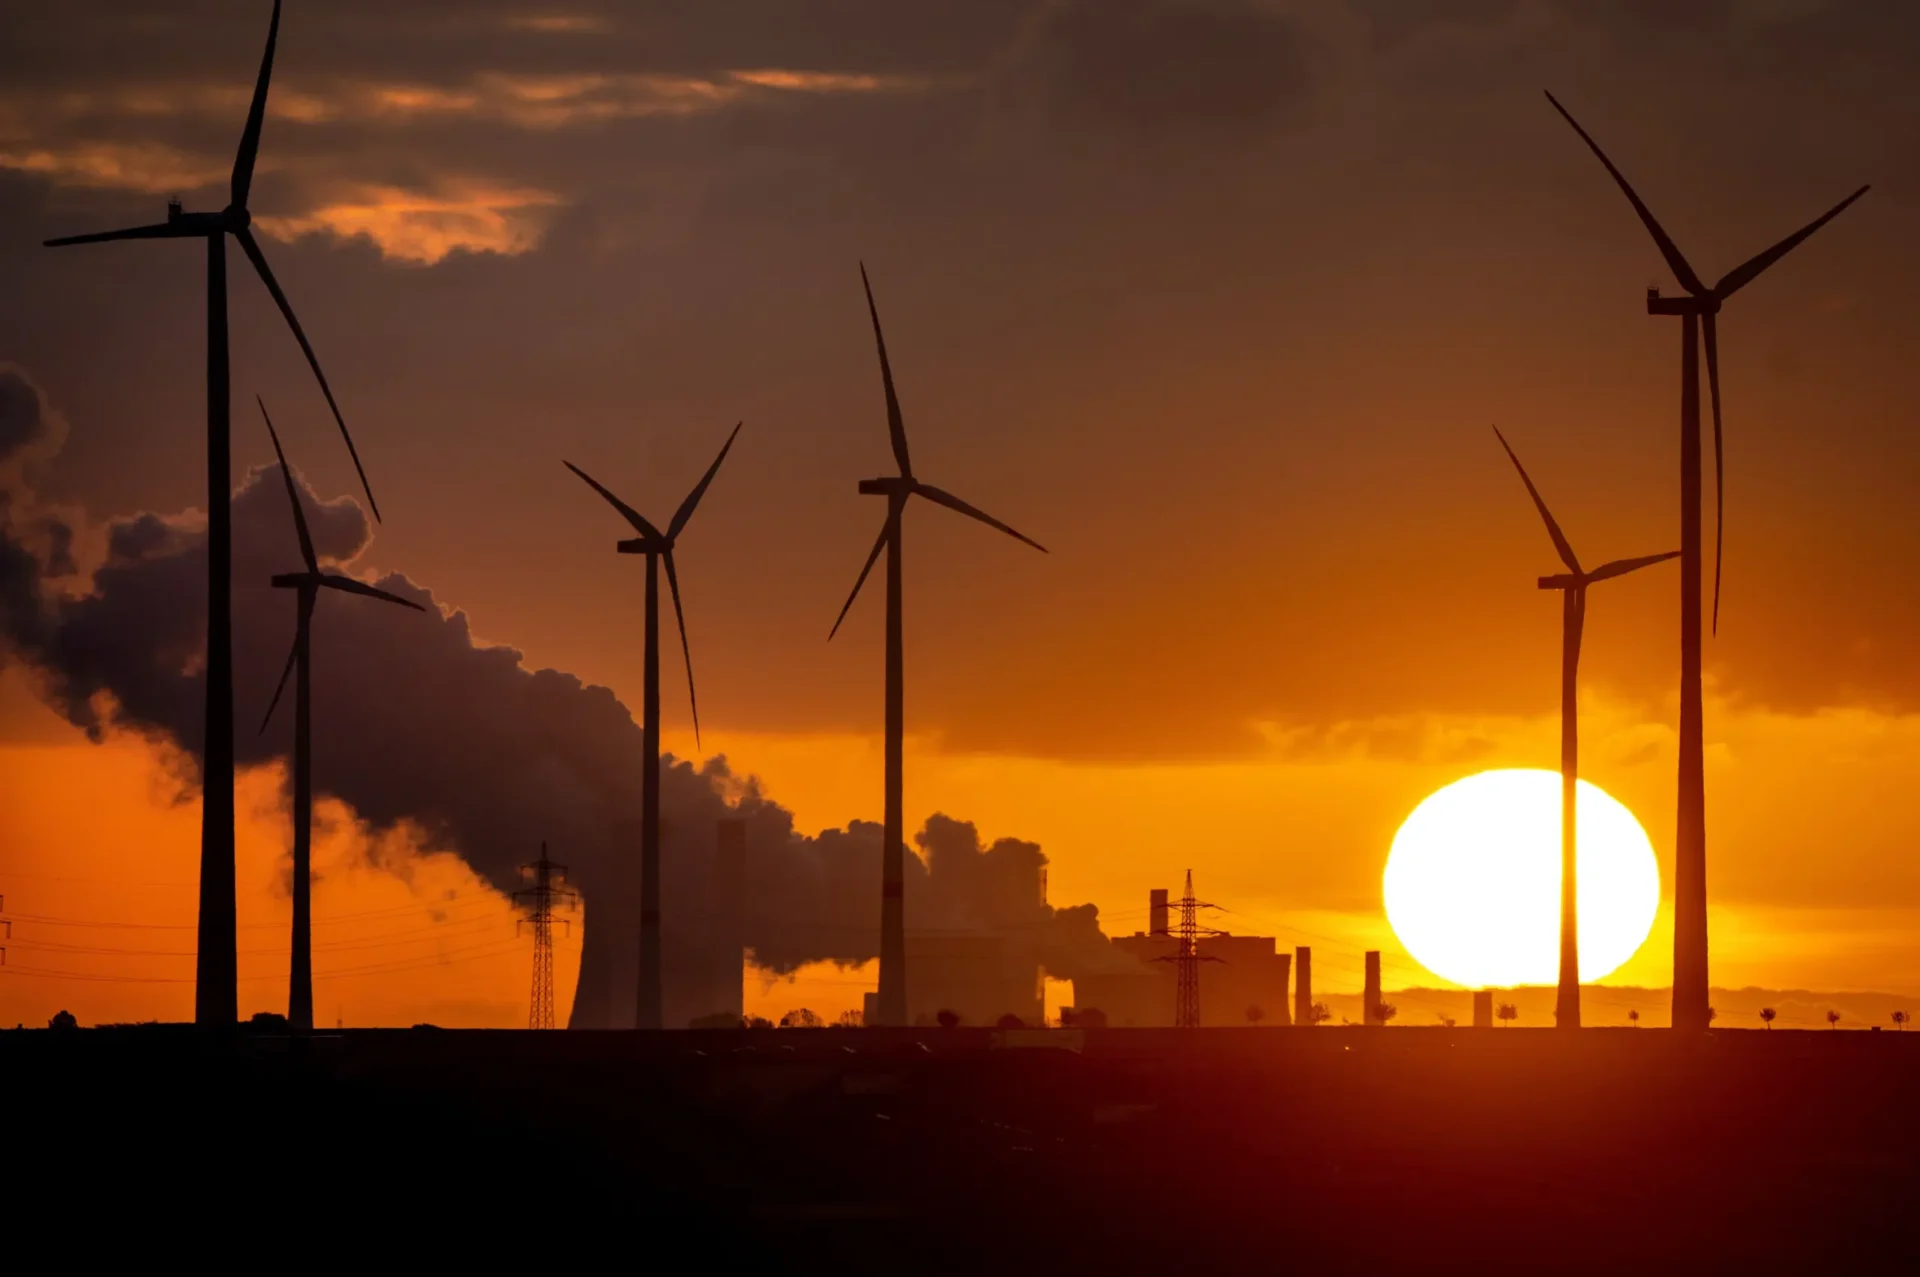 La política, el clima y la guerra hacen de 2022 un “año clave” para la energía limpia